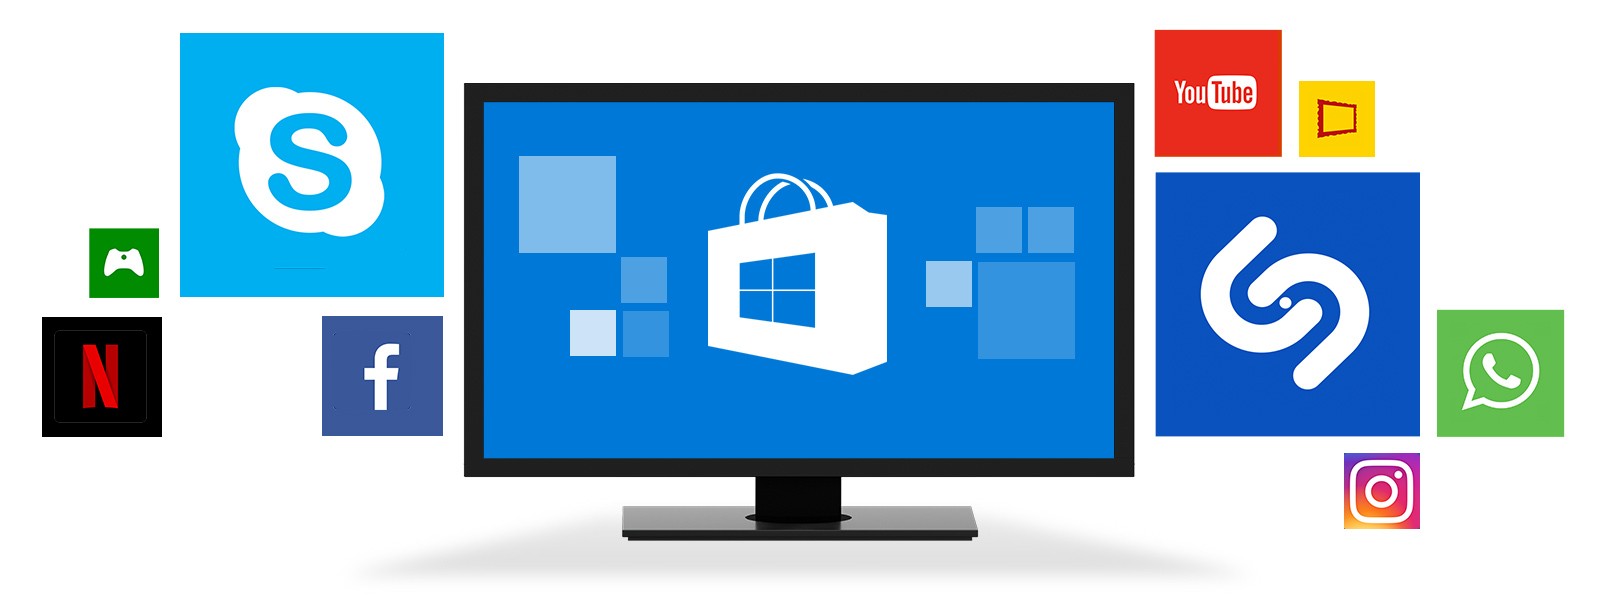 Jogo exclusivo do Windows 10: Tile Rider está de graça na loja da Microsoft  